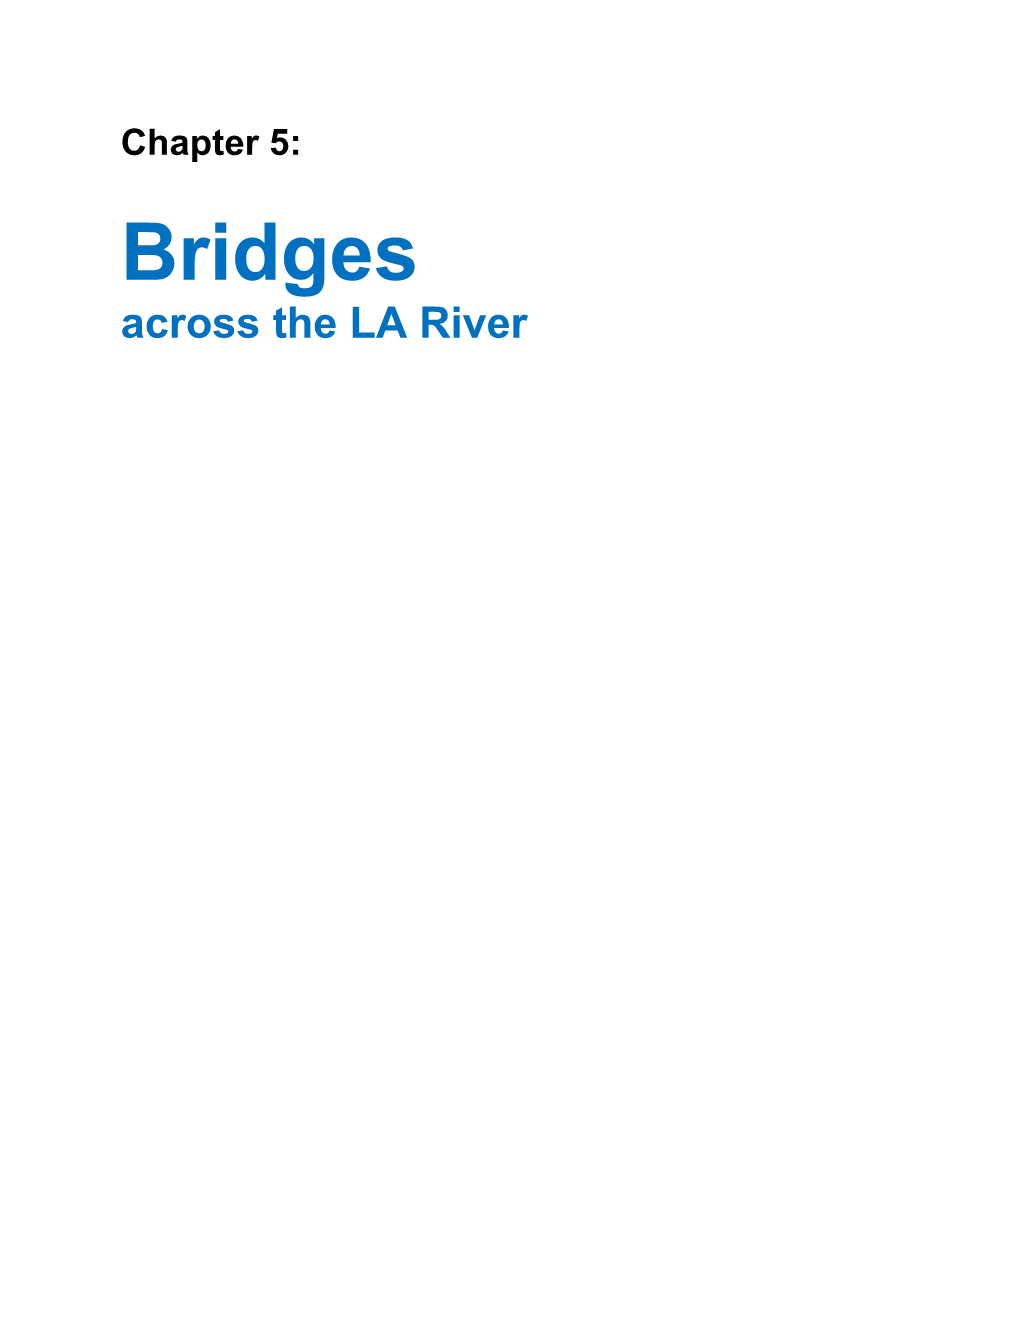 Bridges Across the LA River